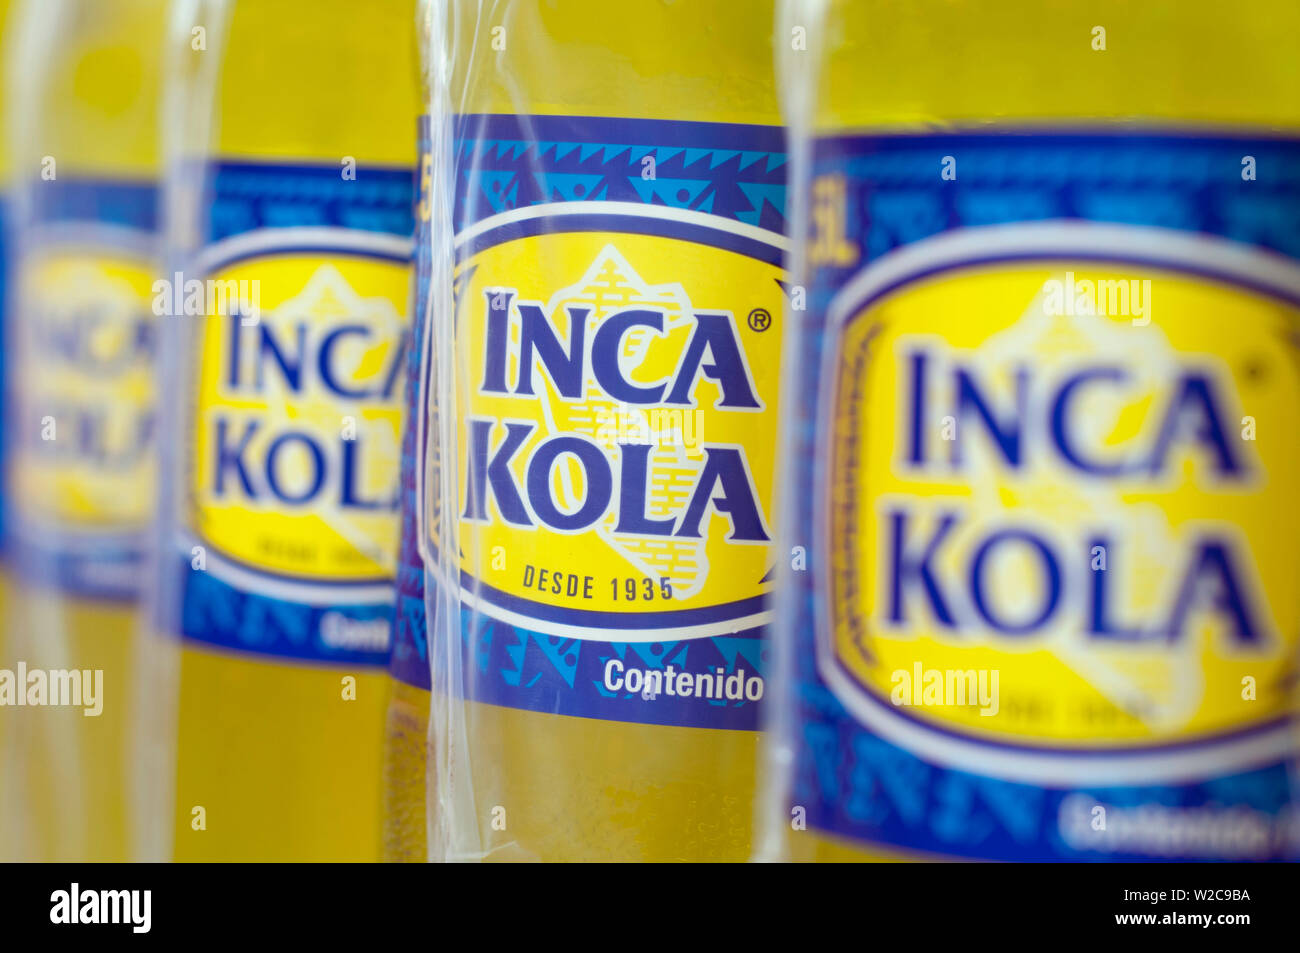 Inca cola peru kola hi-res stock photography and images - Alamy